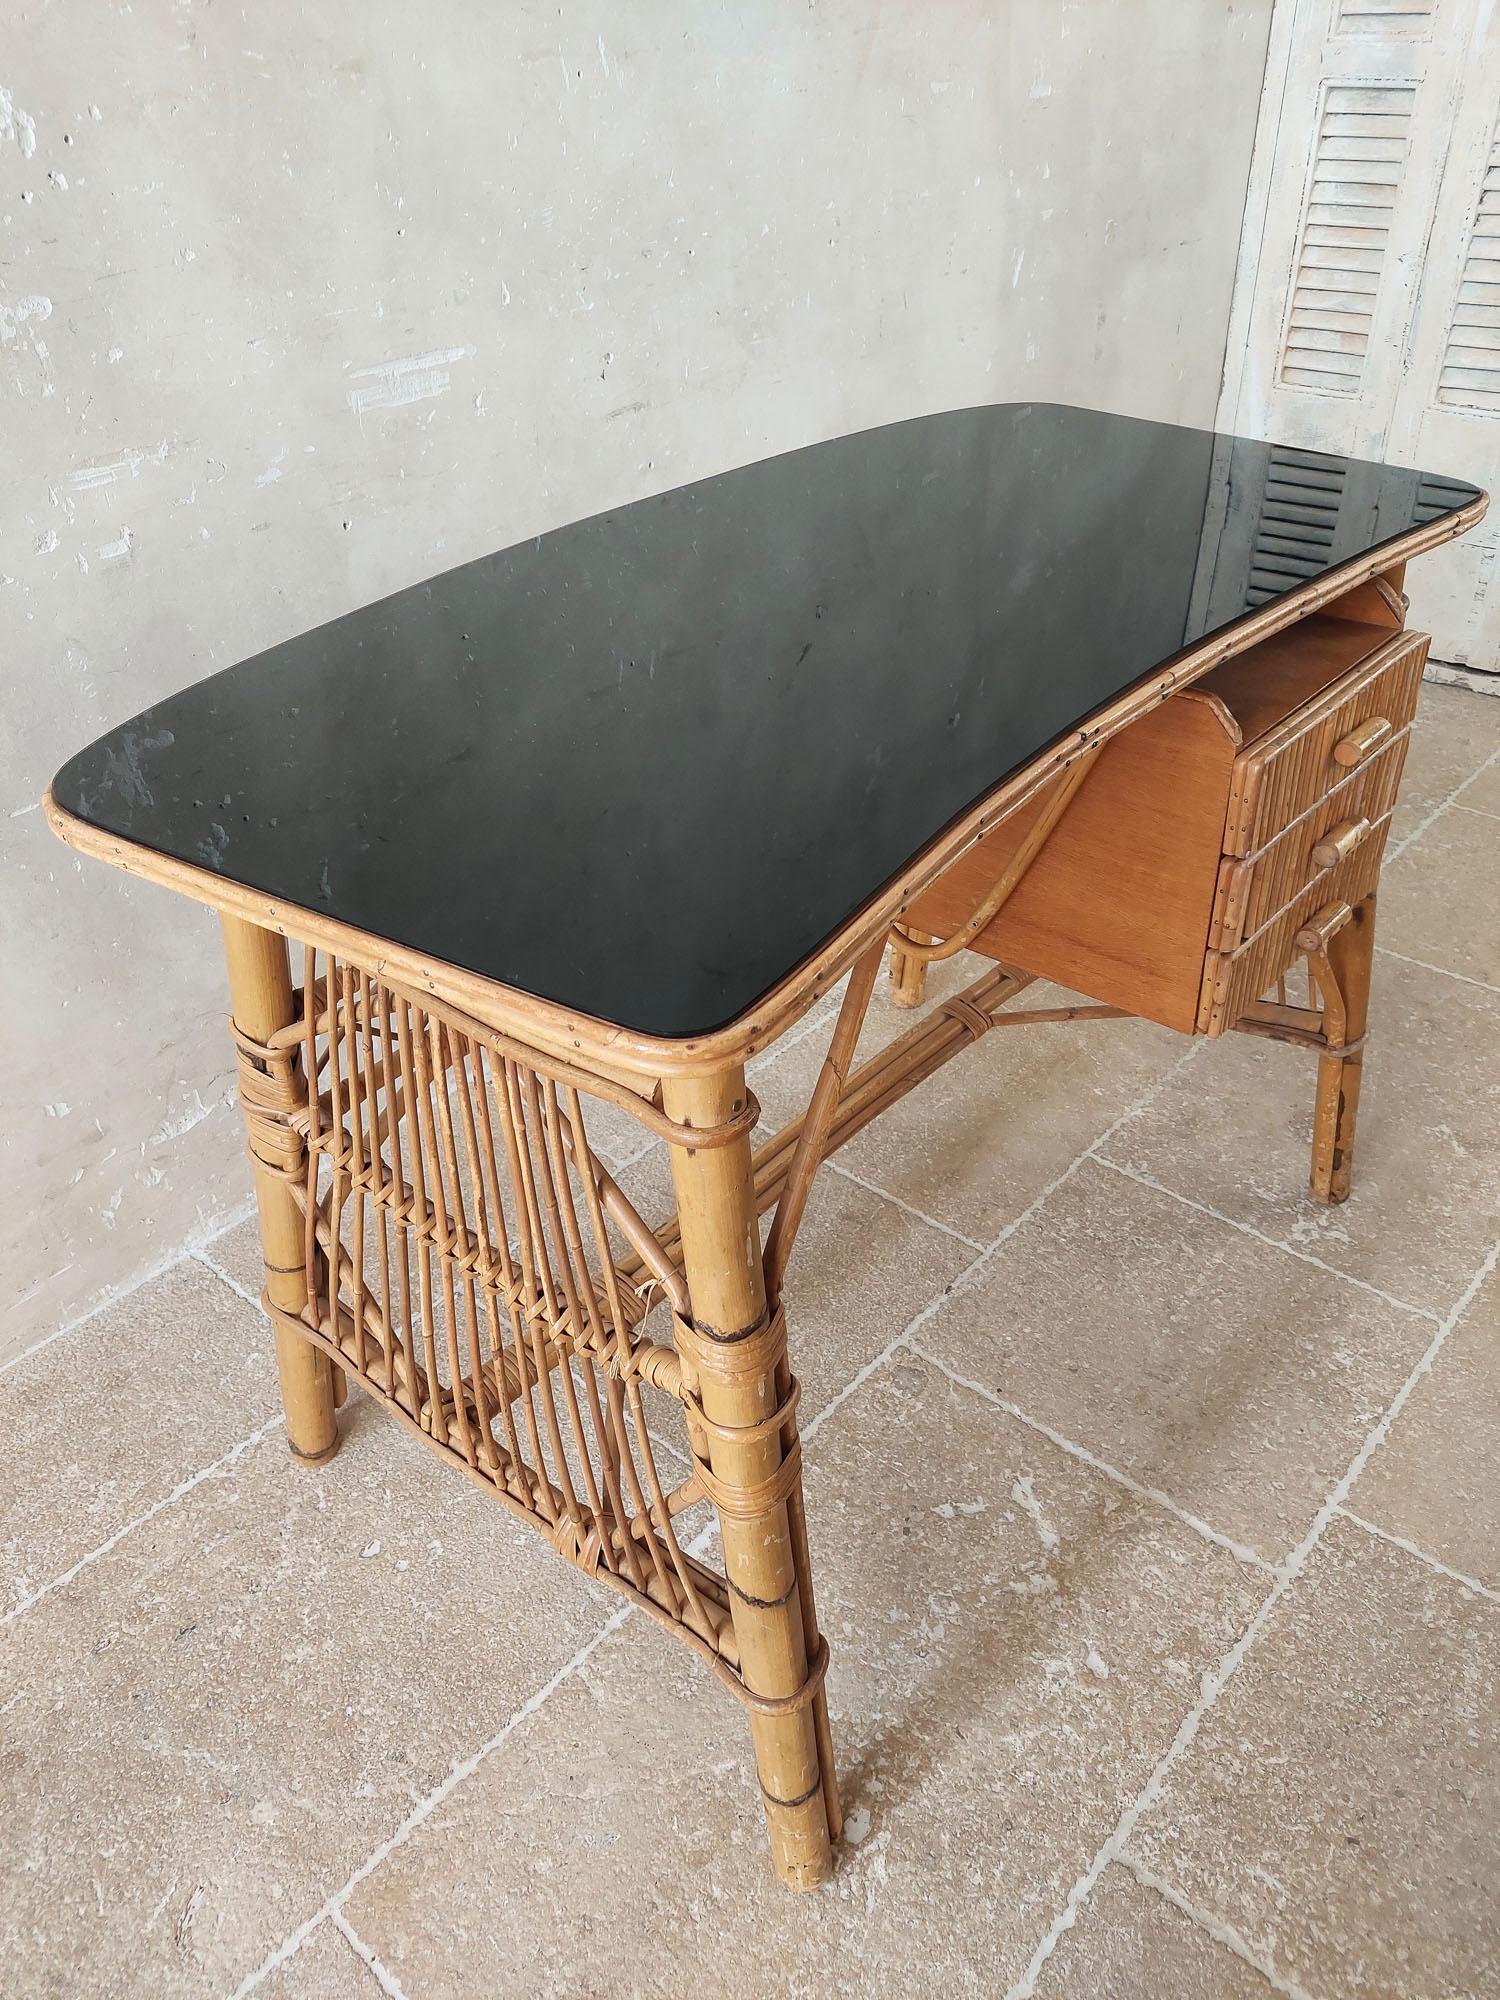 Bureau vintage en rotin et bambou. Une jolie table d'écriture en rotin avec trois tiroirs et un plateau en verre noir légèrement arrondi.

h 76 x l 110 x 60 cm